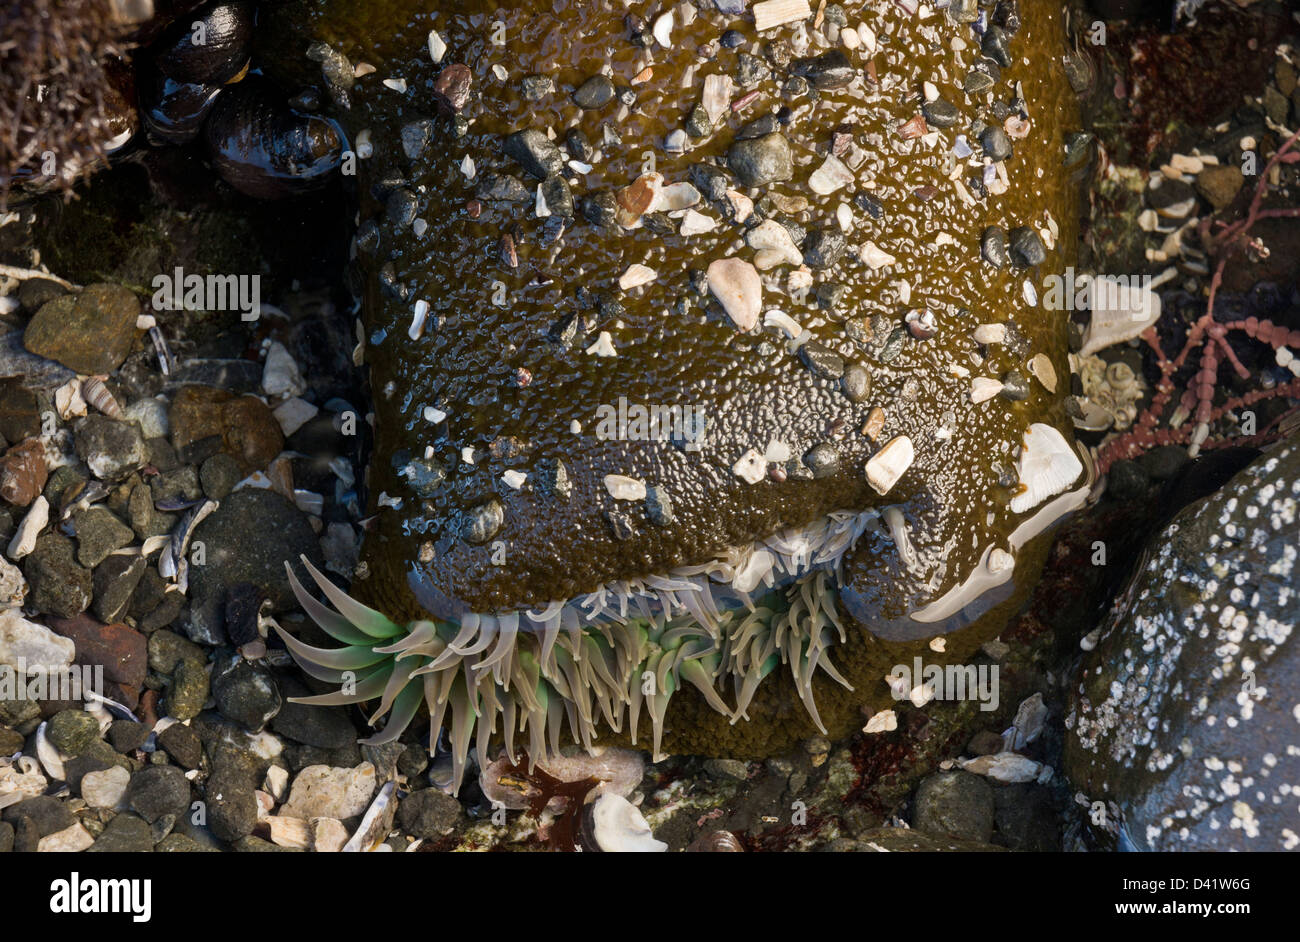 Verde gigante Anemone, Anthopleura xanthogrammica, in tidepool sul Nord costa della California a MacKerricher State Park Foto Stock